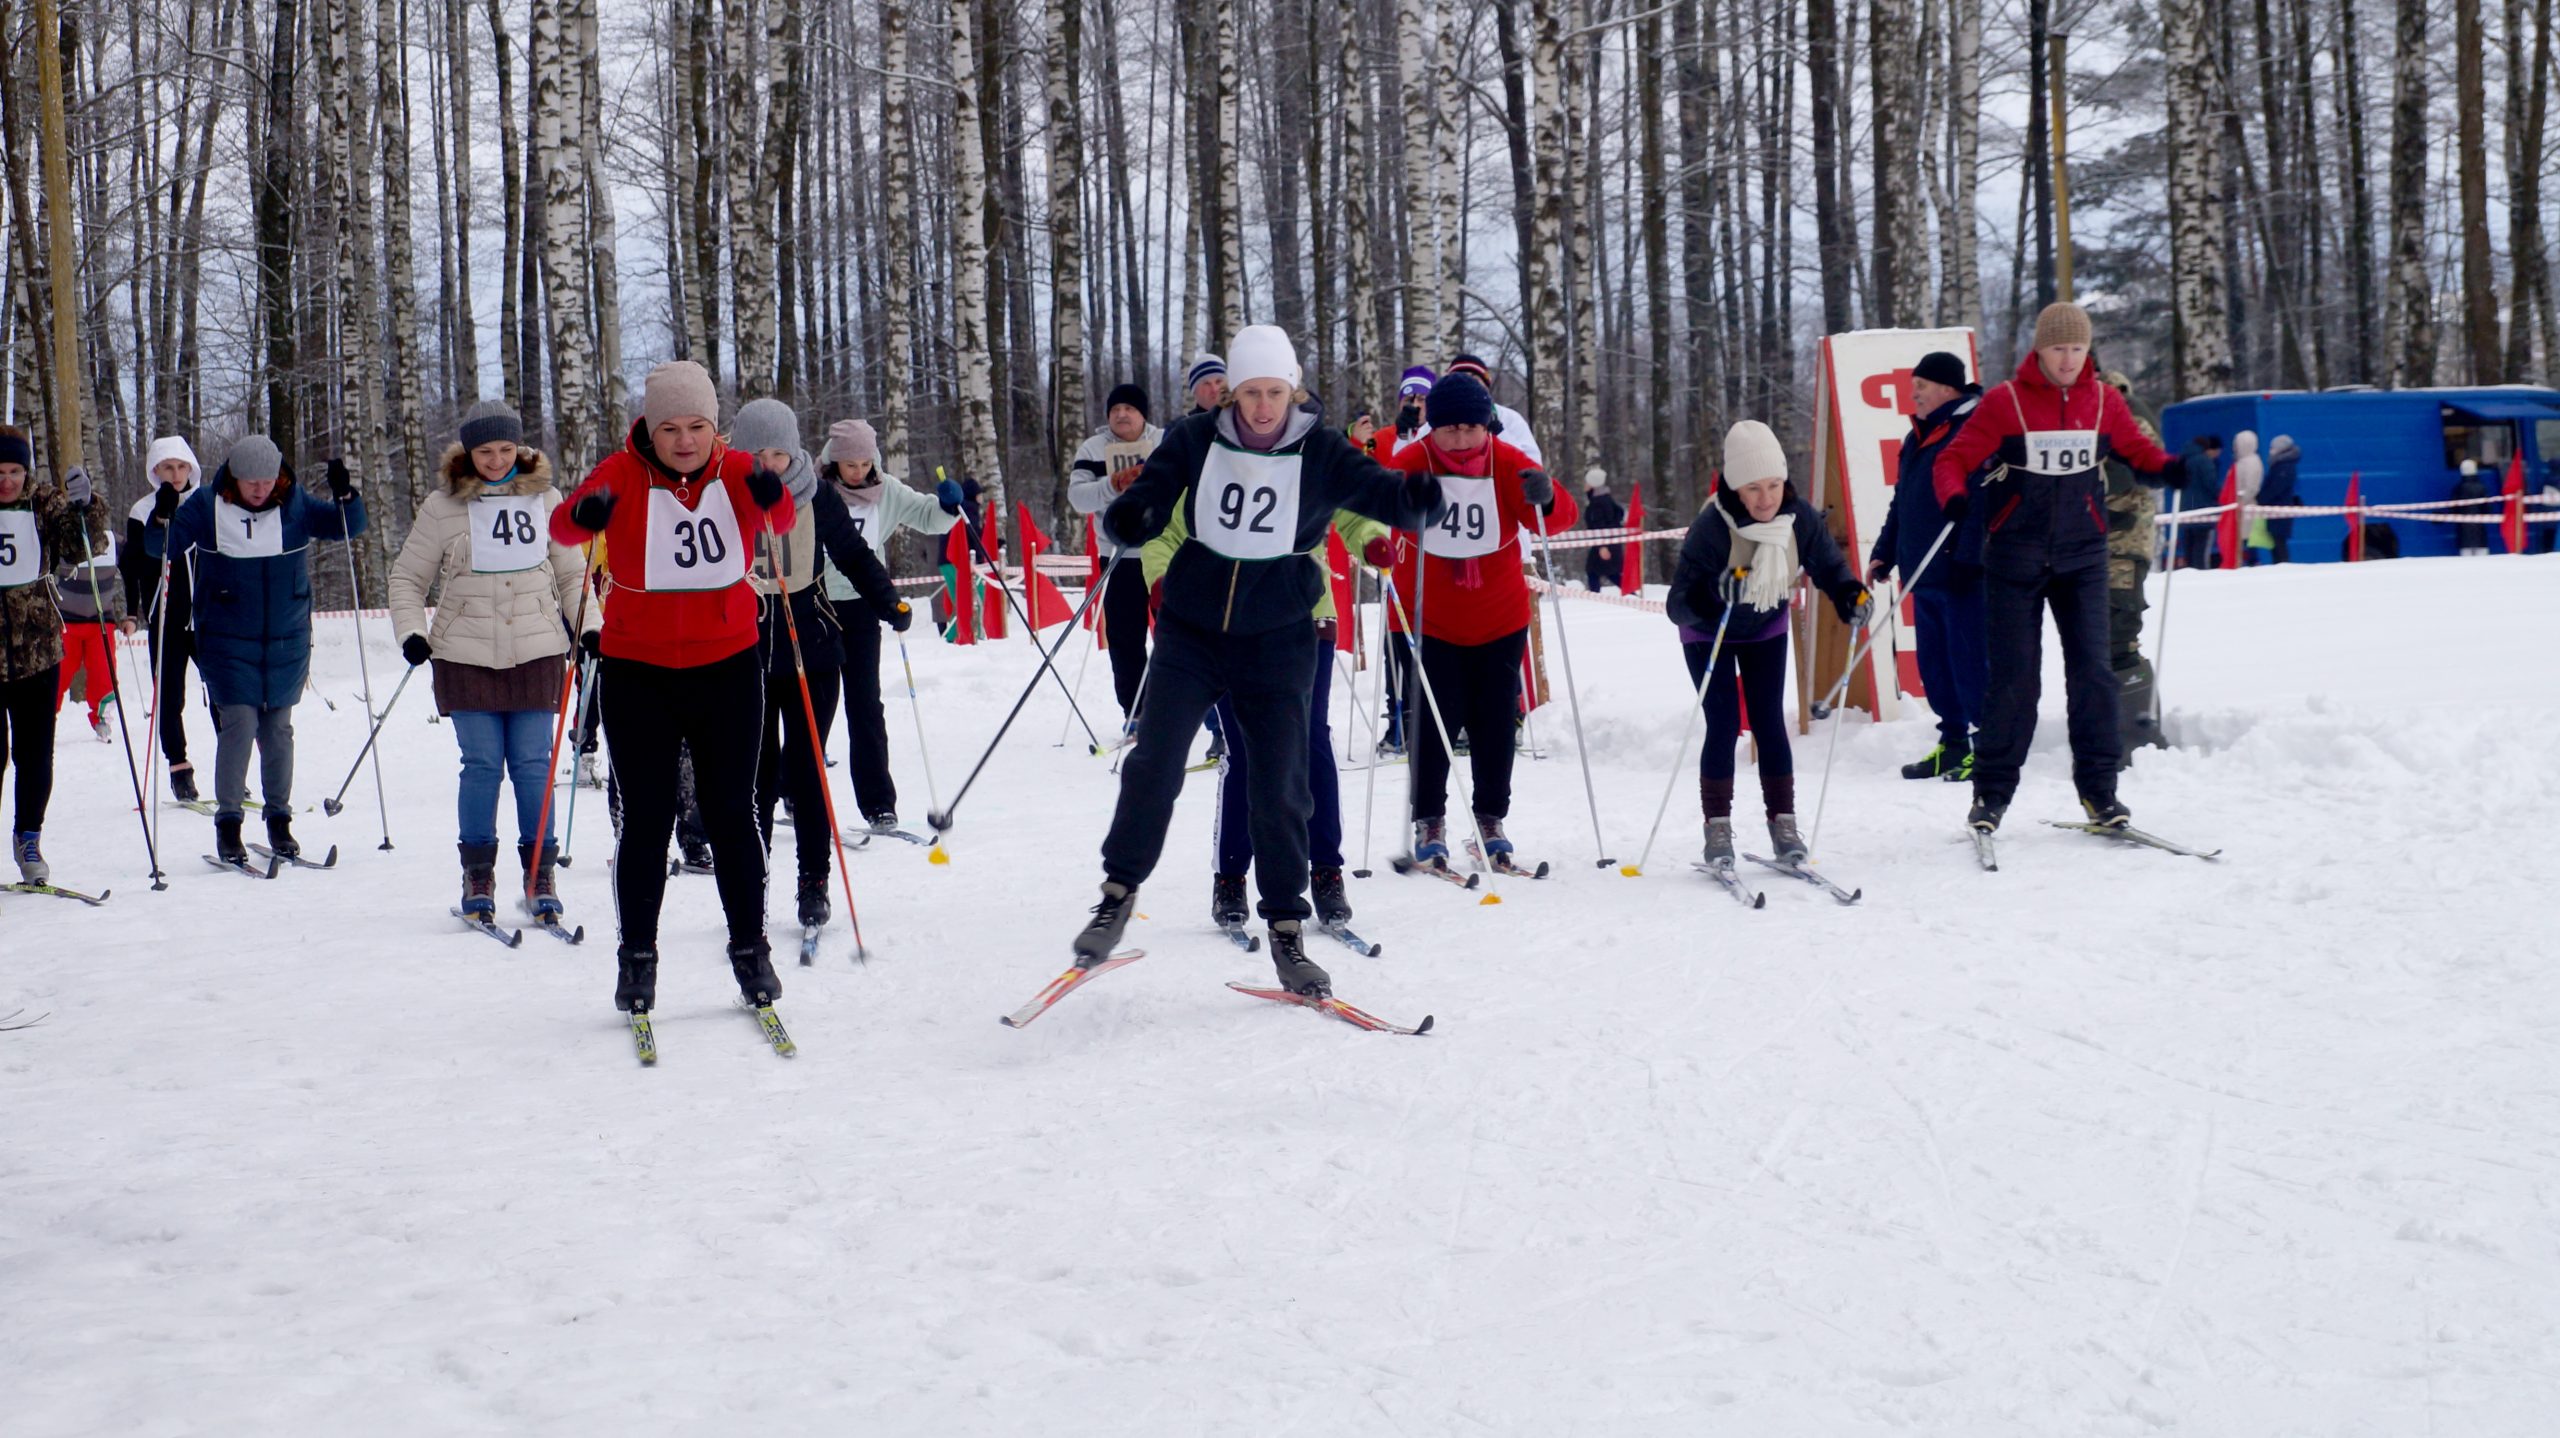 Узнаем, когда будет проходить спортивный праздник “Хотимская лыжня-2023”?